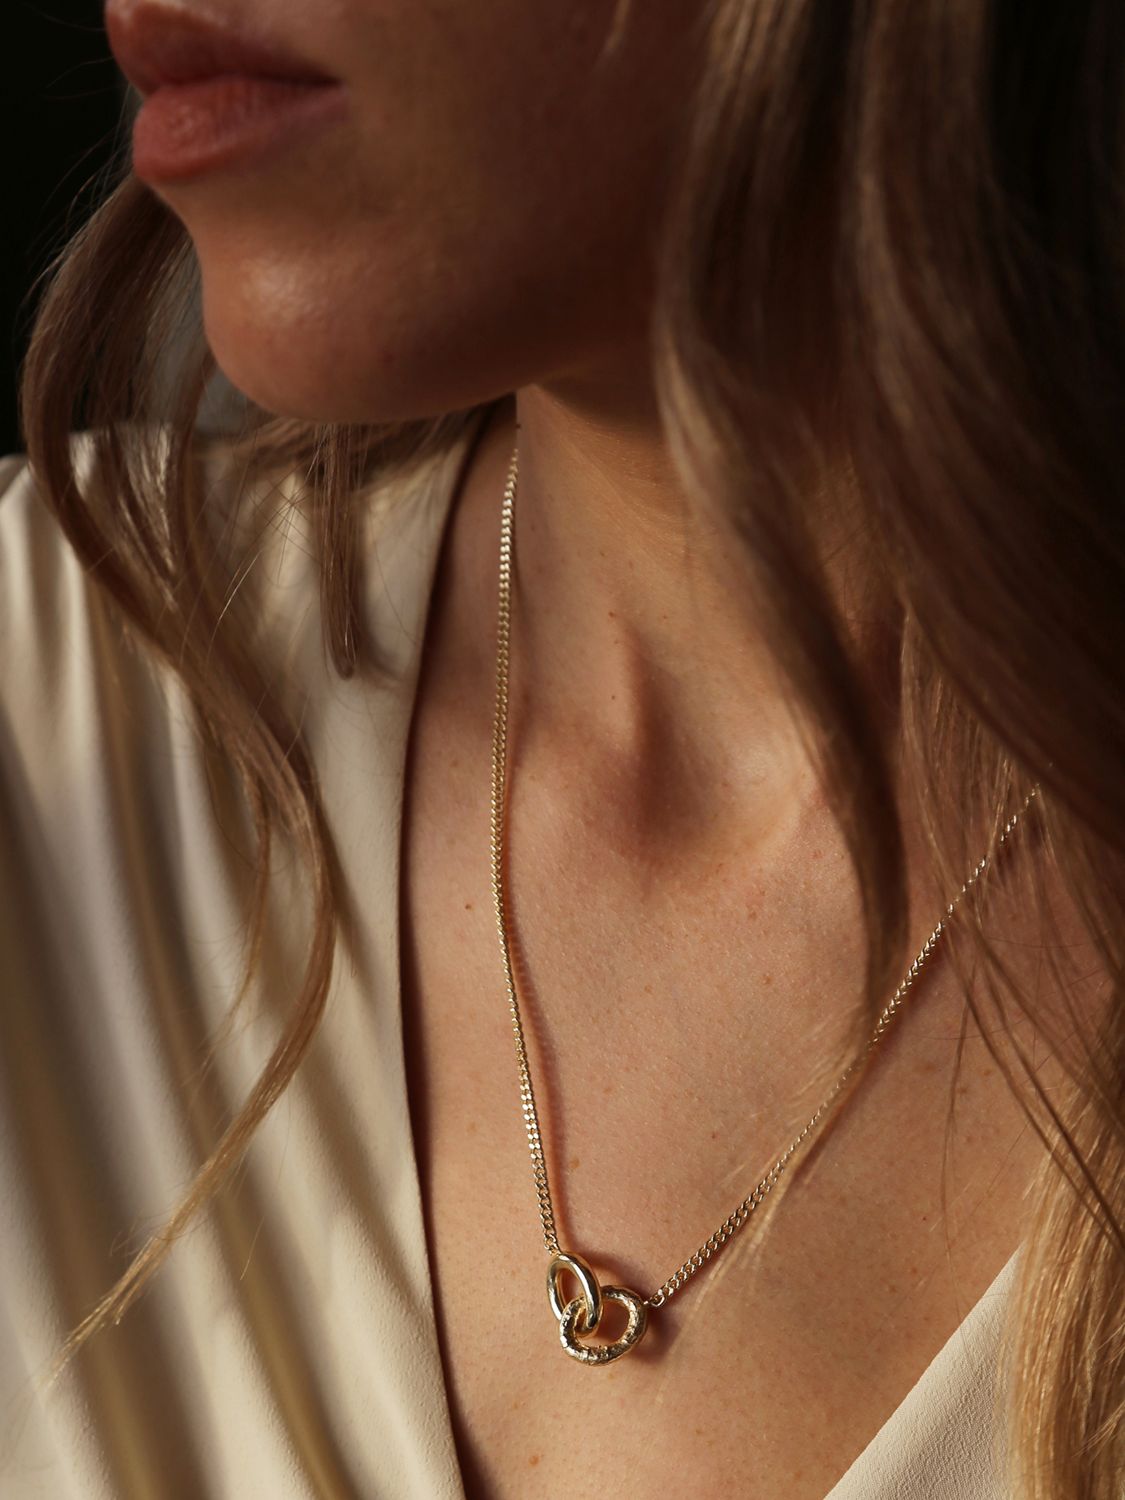 Tutti & Co Daze Double Link Pendant Necklace, Gold